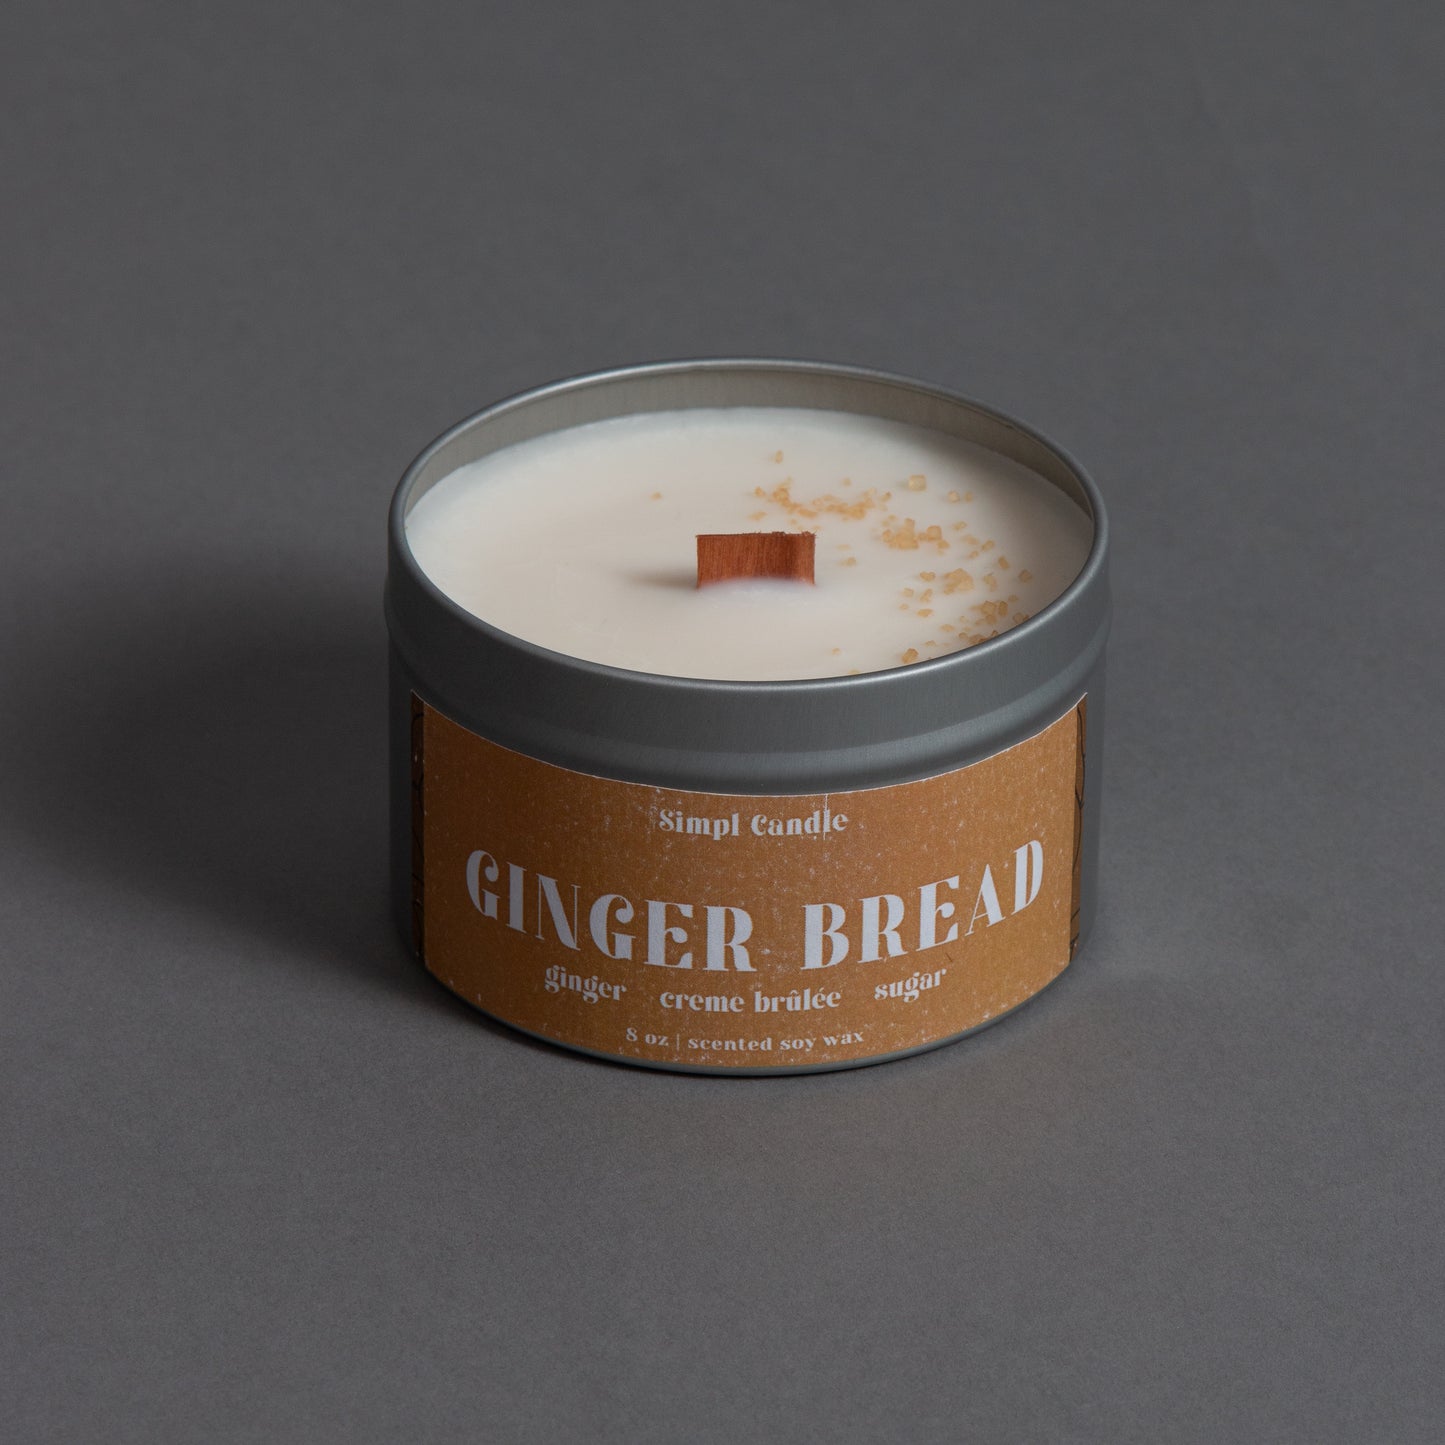 Ginger Bread | Ginger + Creme Brûlée + Sugar